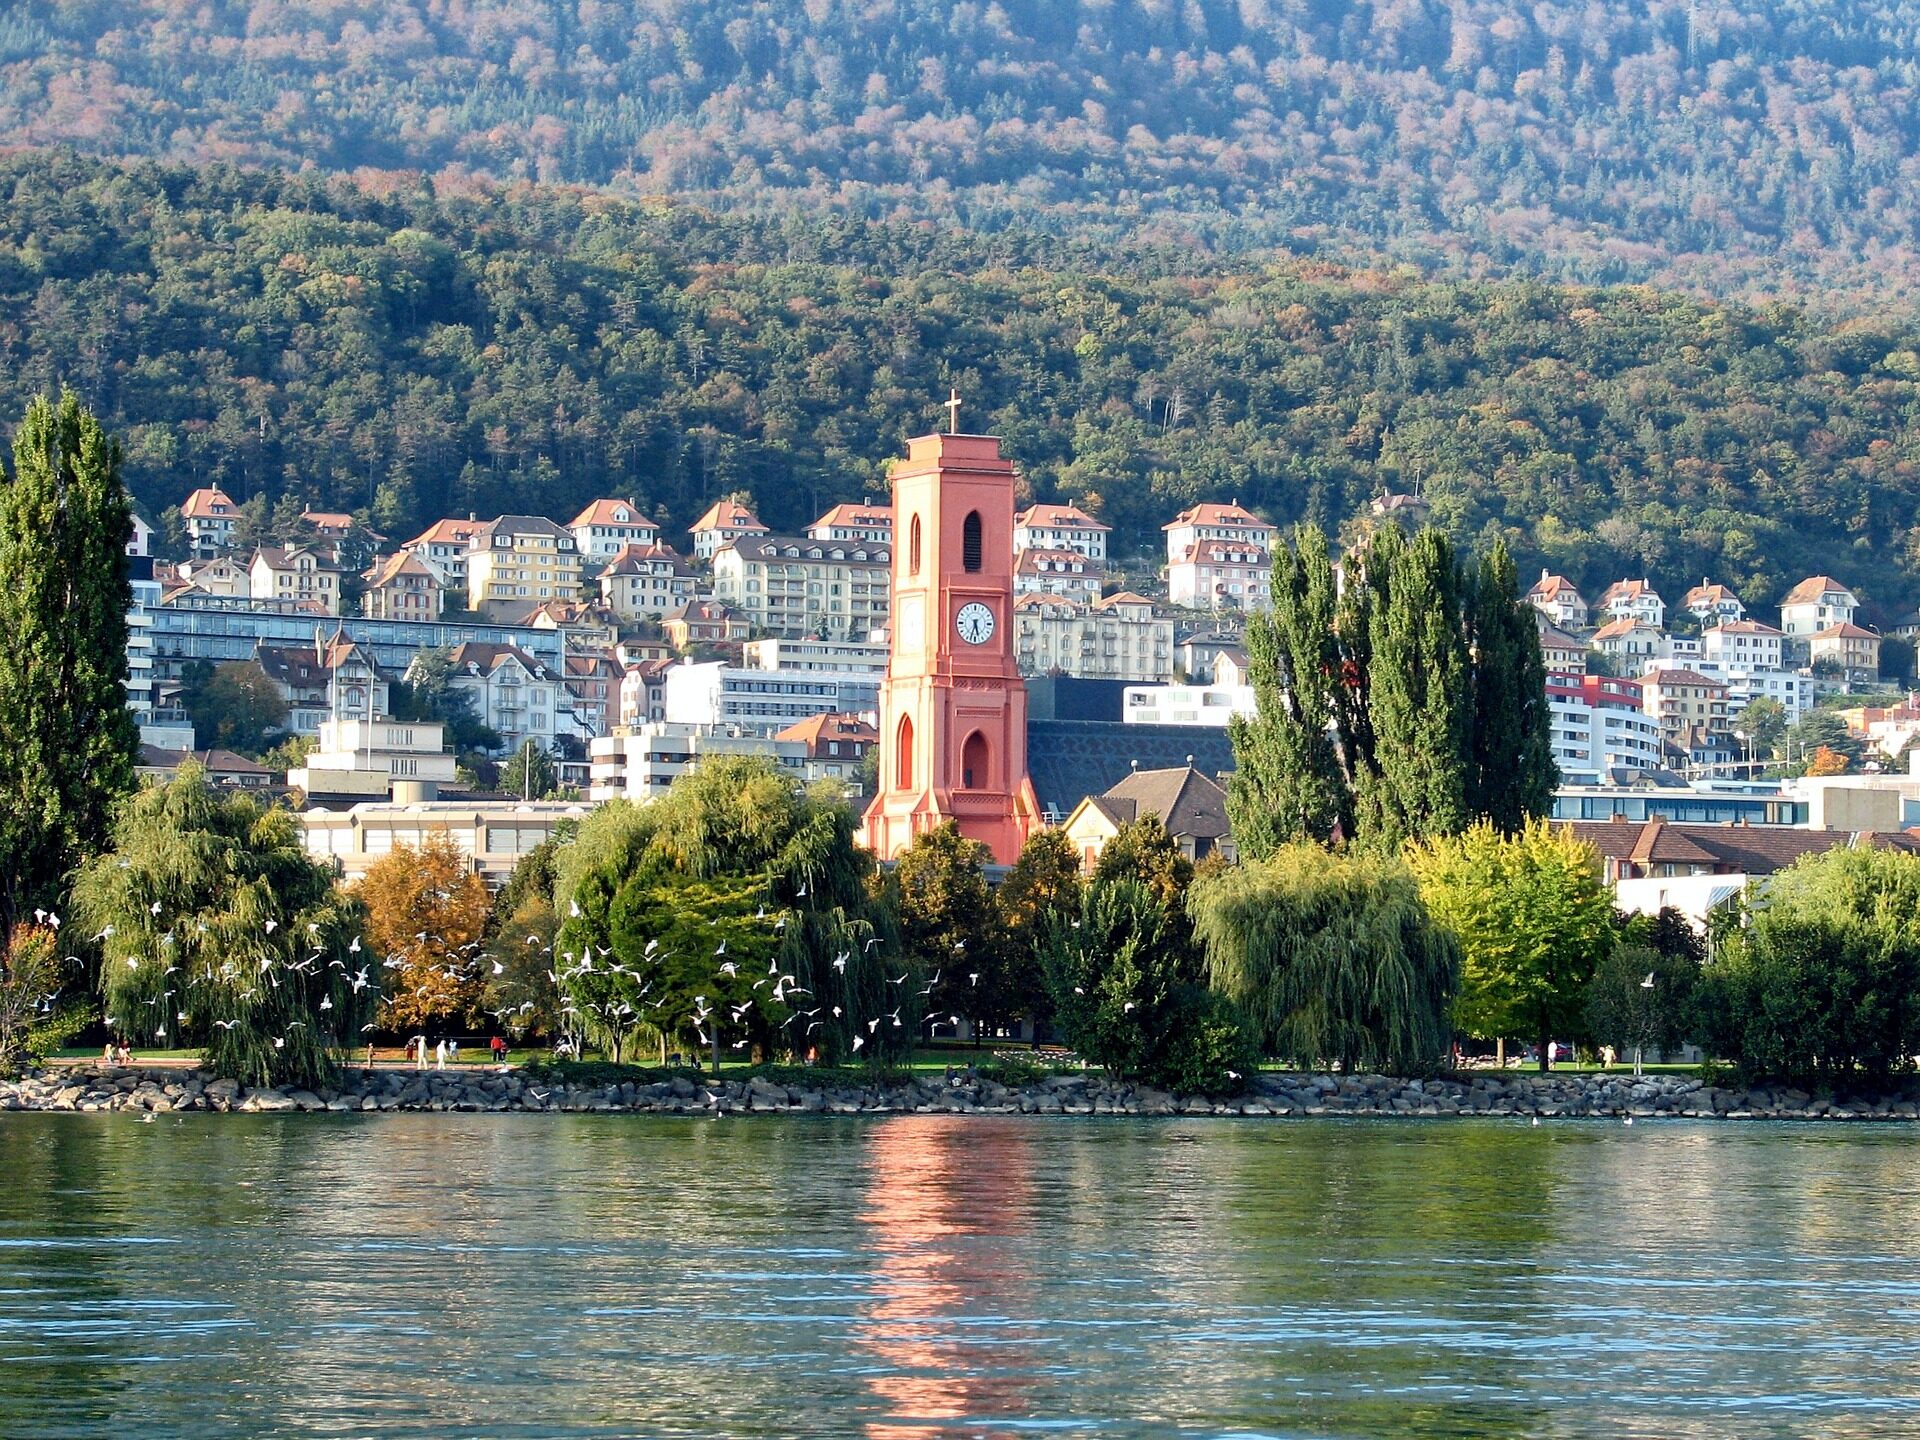 Les Eglises du canton de Neuchâtel veulent montrer à la population le travail social et spirituel qu'elles fournissent | photo: "l'église rouge" à Neuchâtel © David Mark/Pixabay